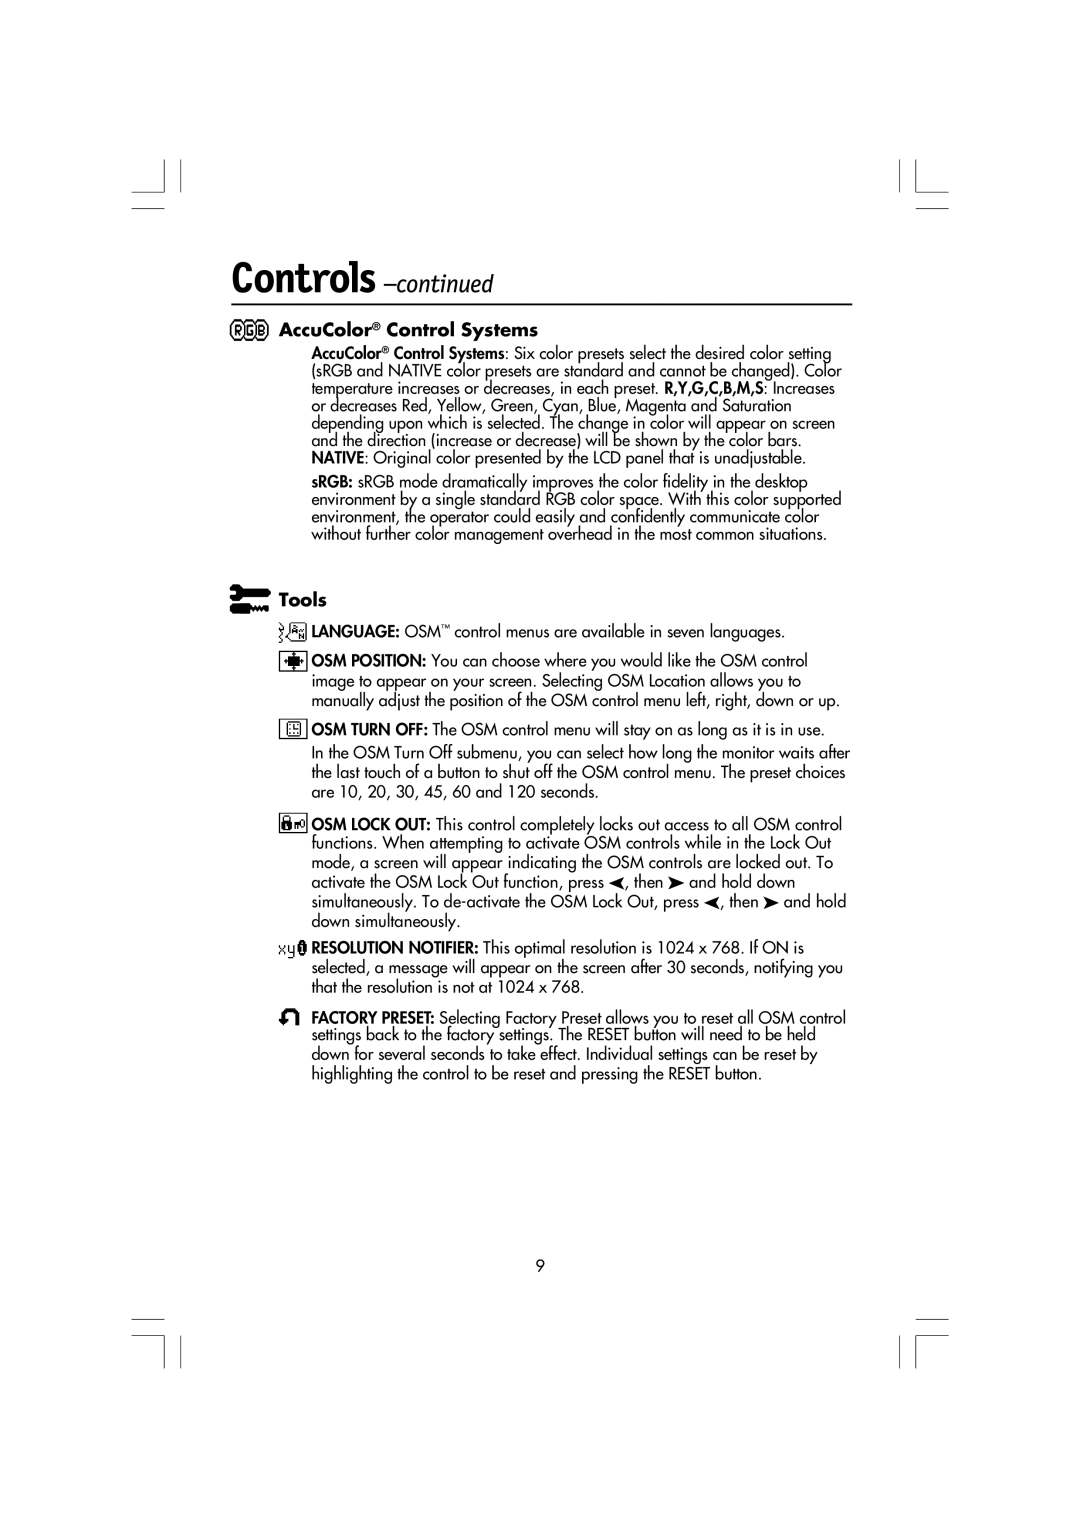 NEC LA-15R03-BK, LCD1550M manual Controls -continued, AccuColor Control Systems, Tools 